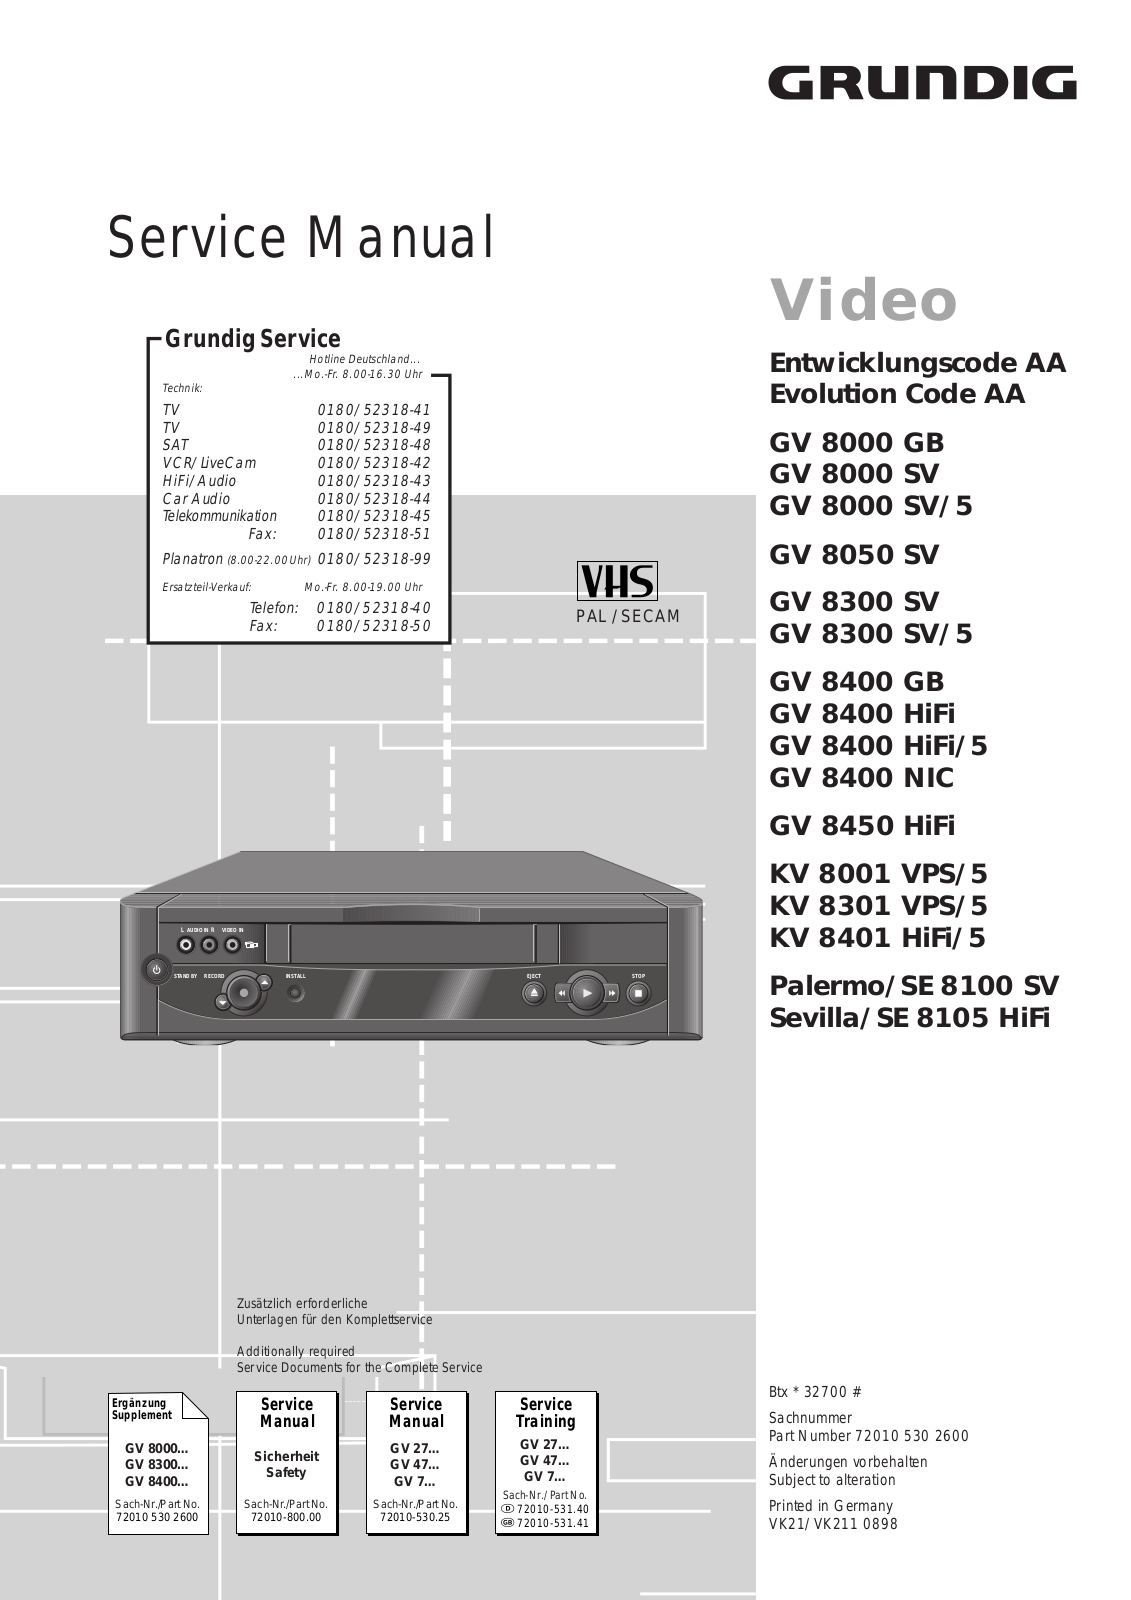 GRUNDIG GV 8000 GB, GV 8000 SV, GV 8000 SV/5, GV 8050 SV, GV 8300 SV Service Manual